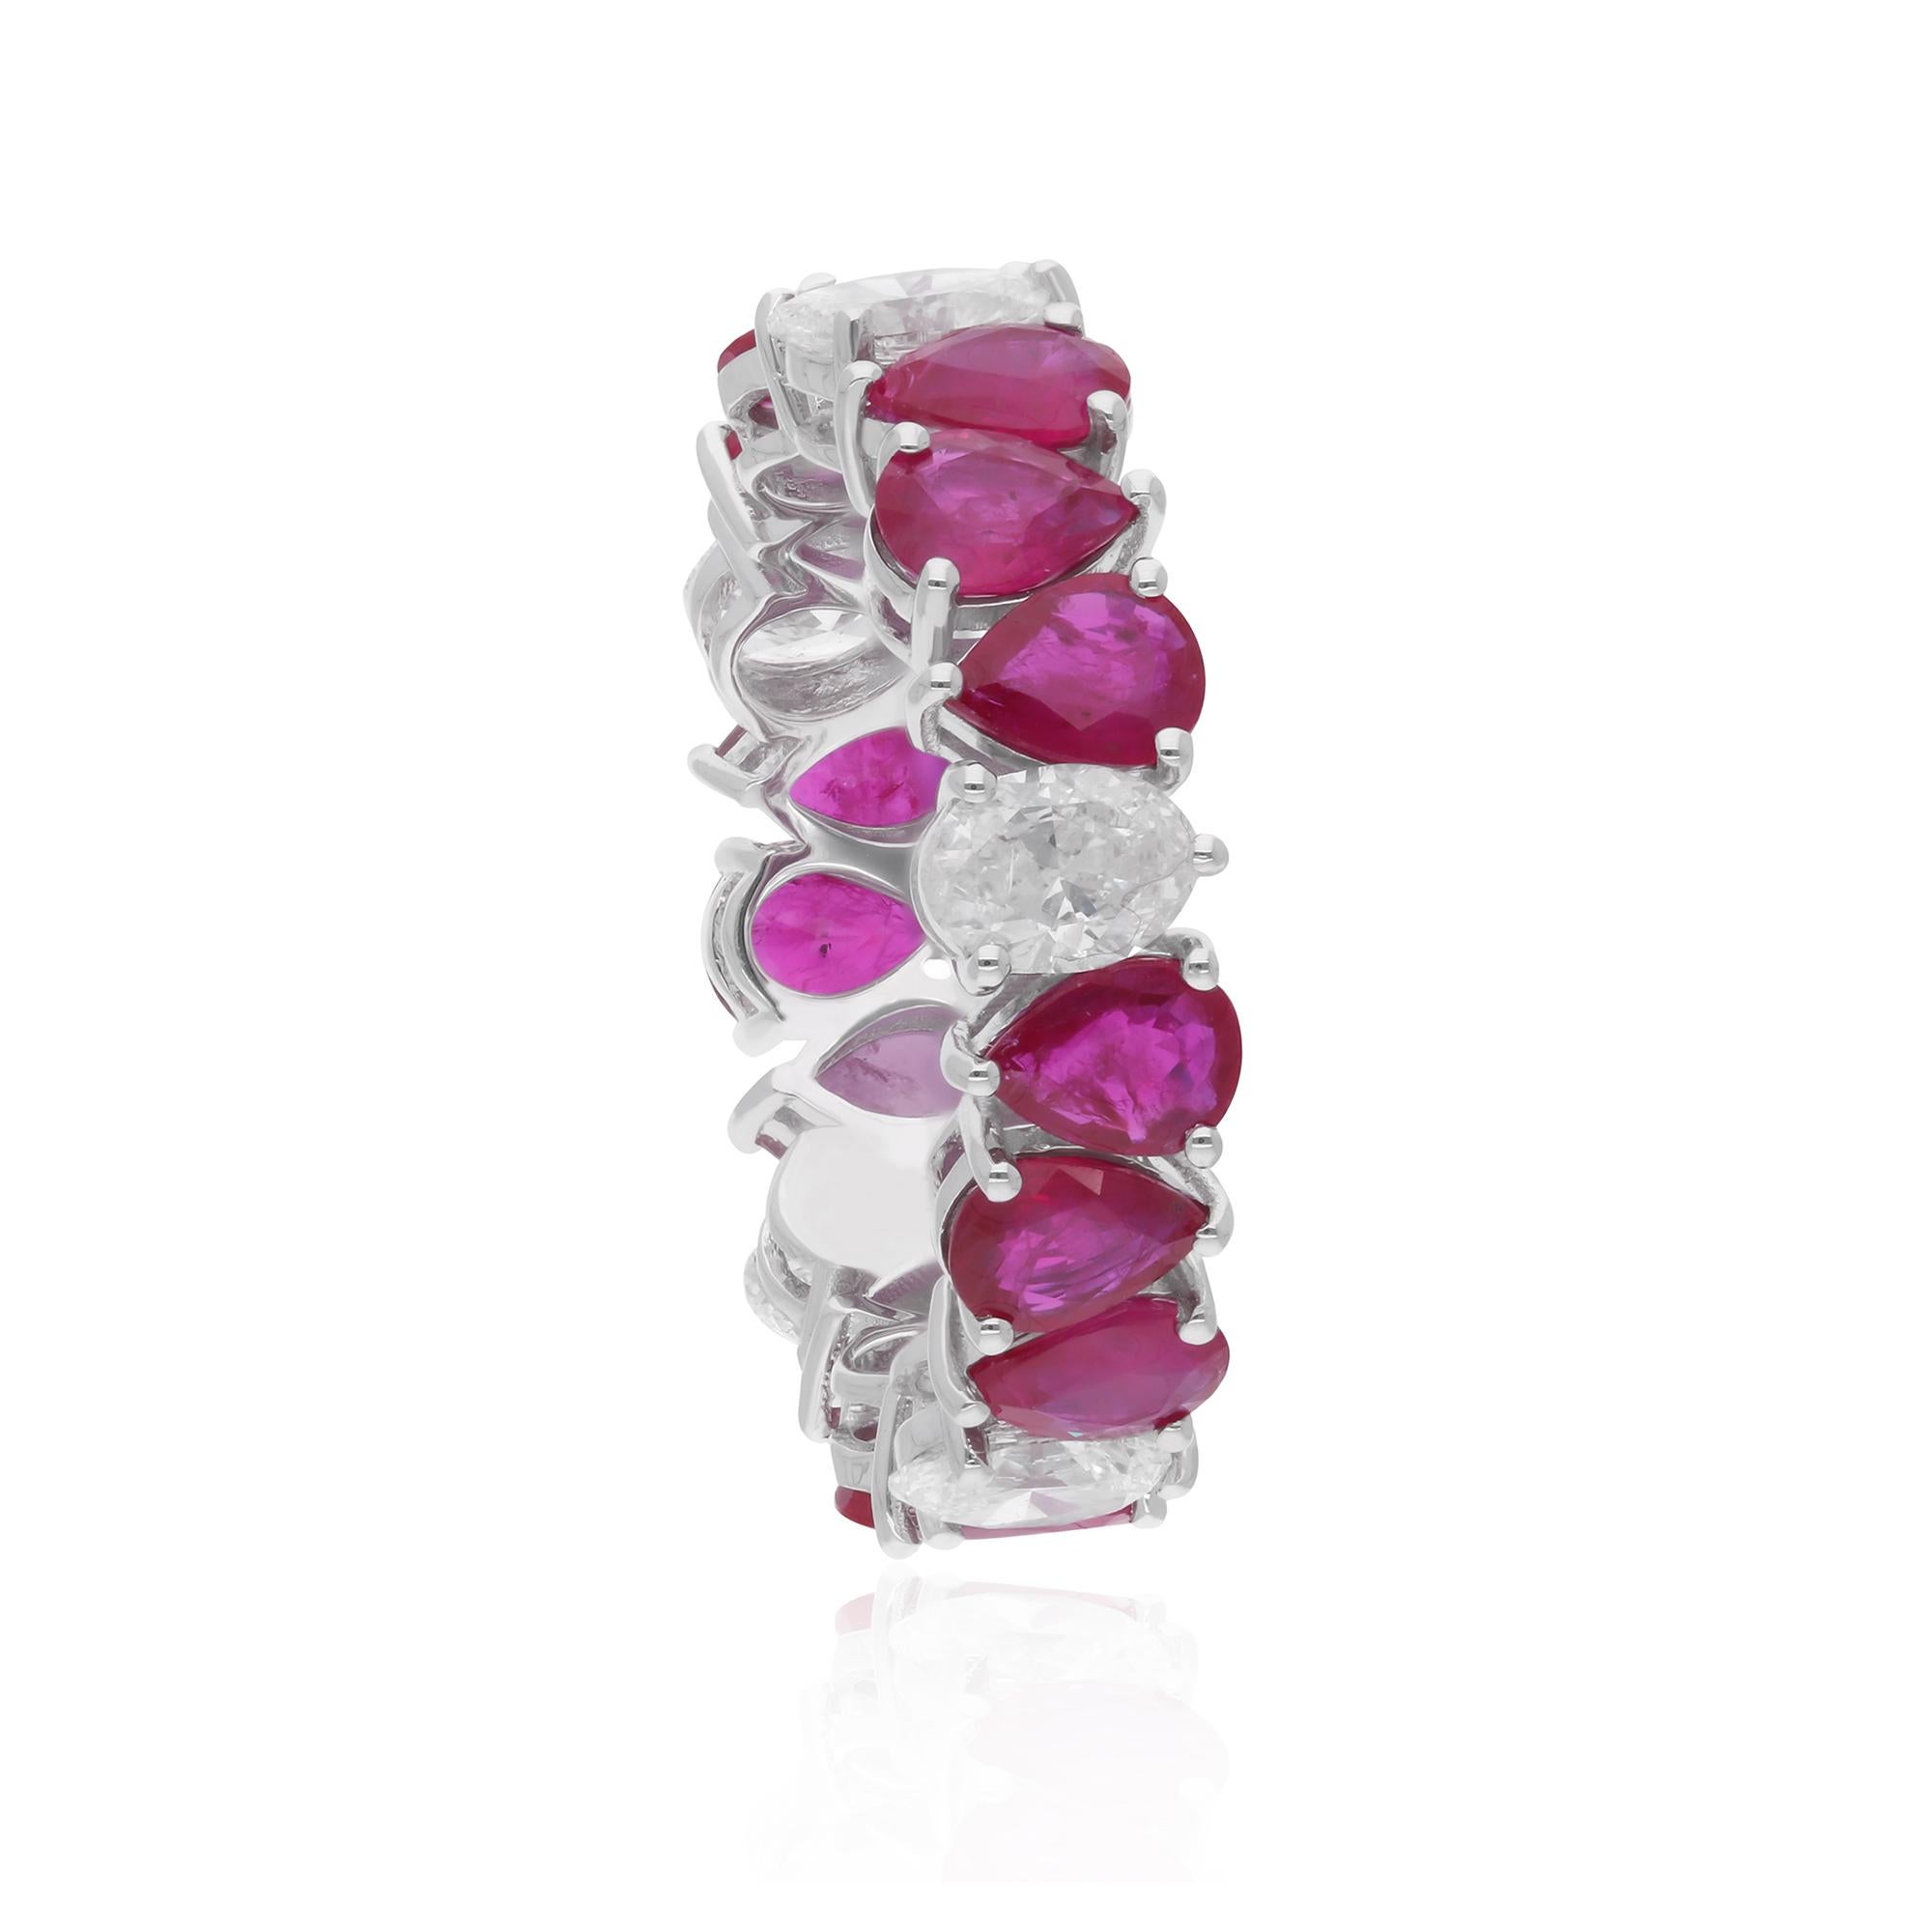 Les rubis sont entourés de diamants ovales étincelants, sertis de manière experte en pavé ou en pince pour maximiser leur brillance et leur éclat. Avec leur clarté étincelante et leur couleur HI, ces diamants ajoutent une touche de glamour et de